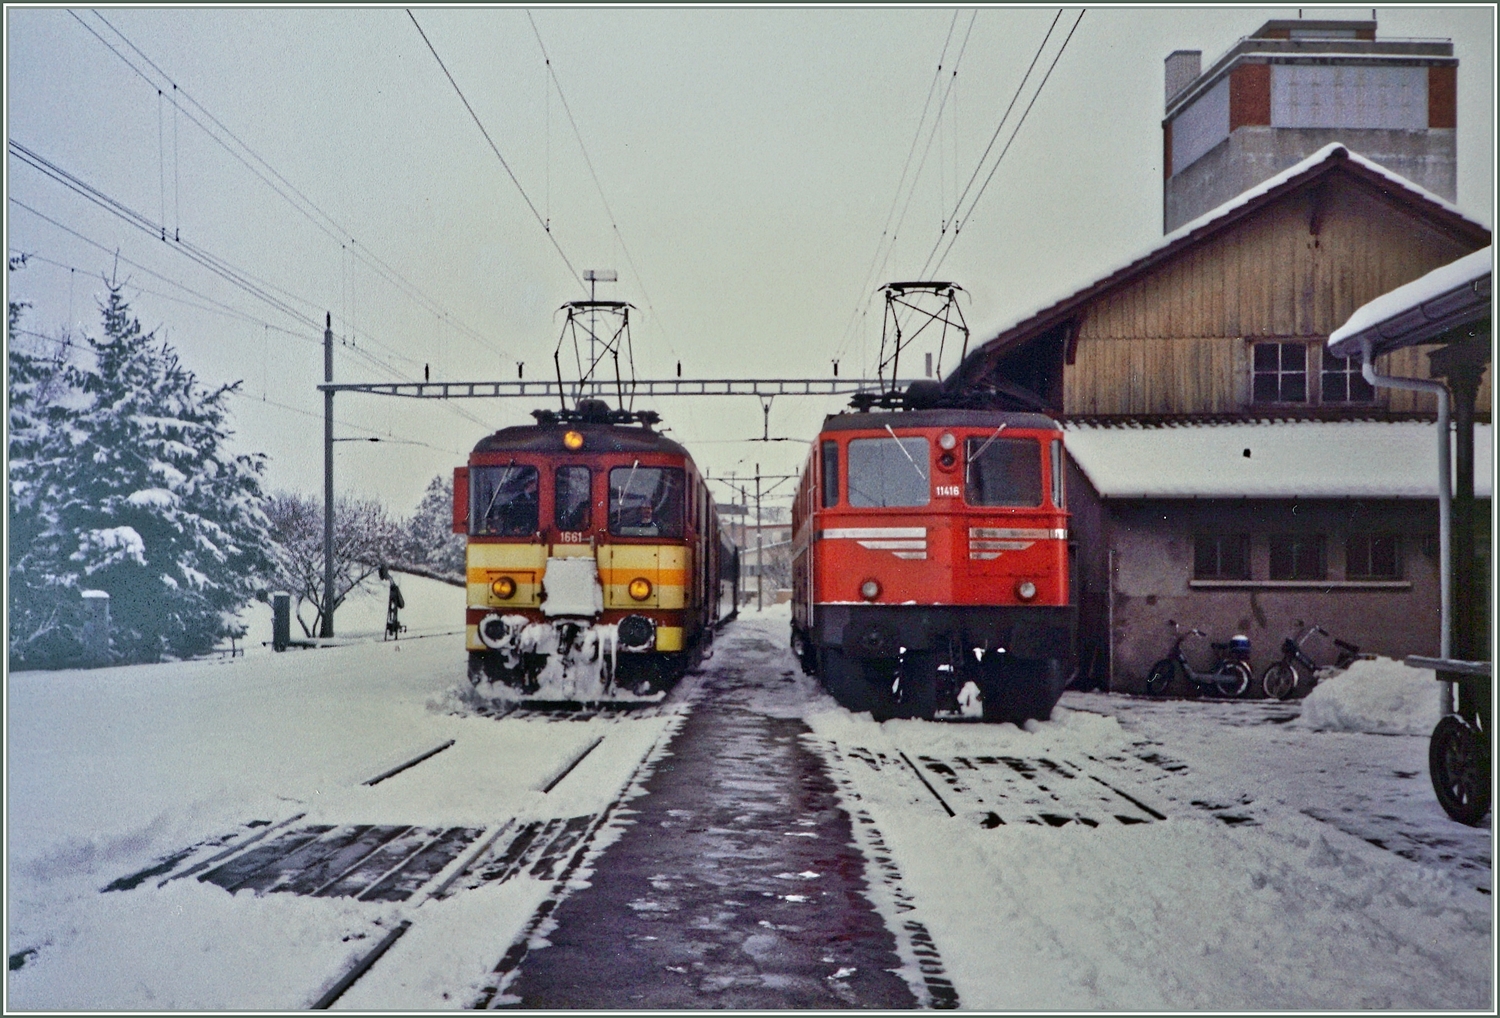 De 4/4 1661 und Ae 6/6 111416  Glaurs  stehen im verschneiten Bahnhof von Beromünster. Analogbild vom März 1988